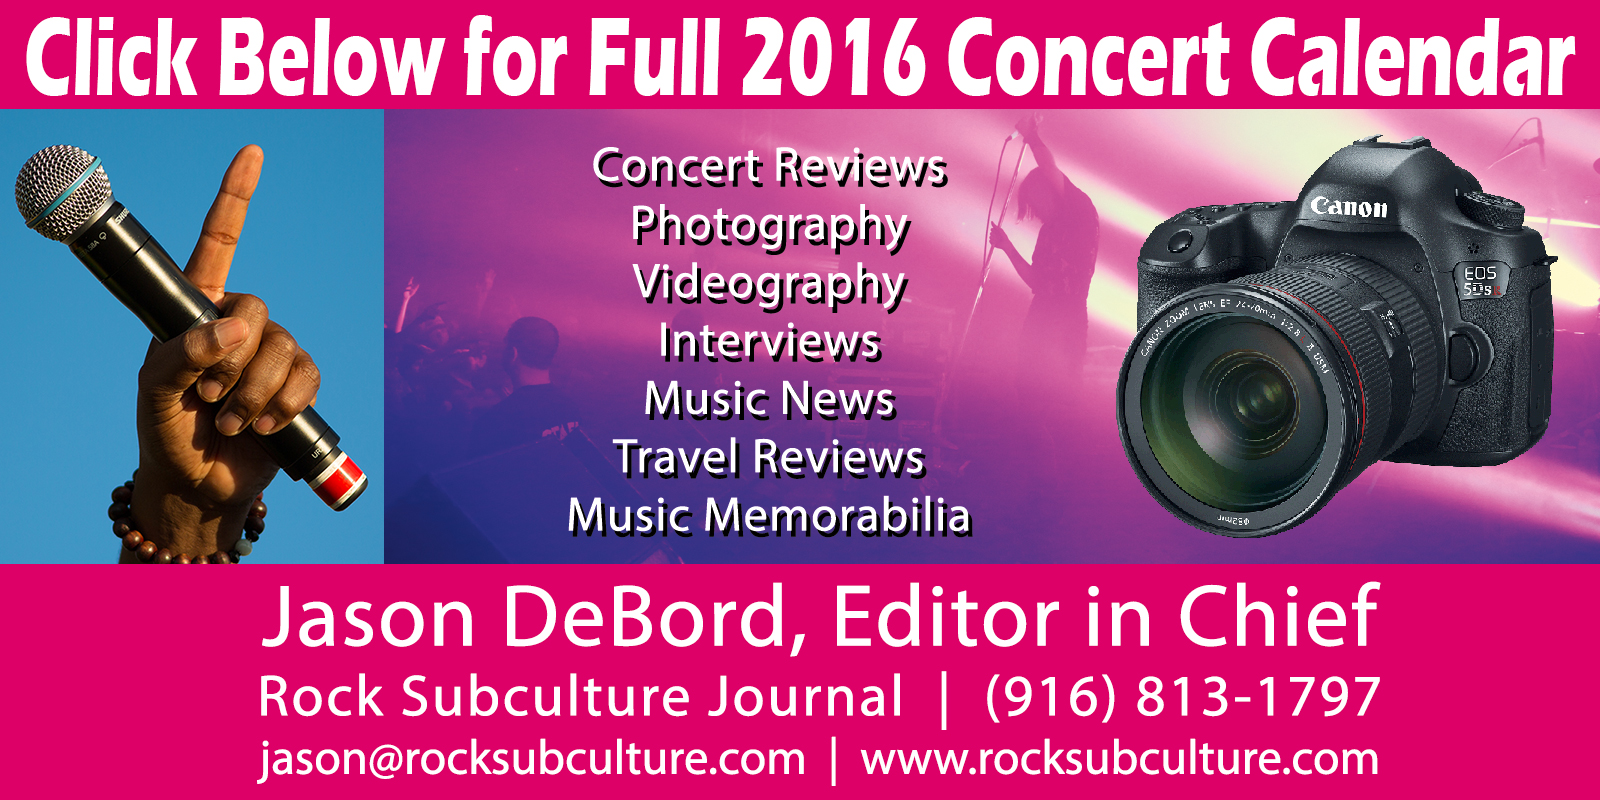 Rock-Subculture-Journal-2016-Concert-Calendar-Schedule-List